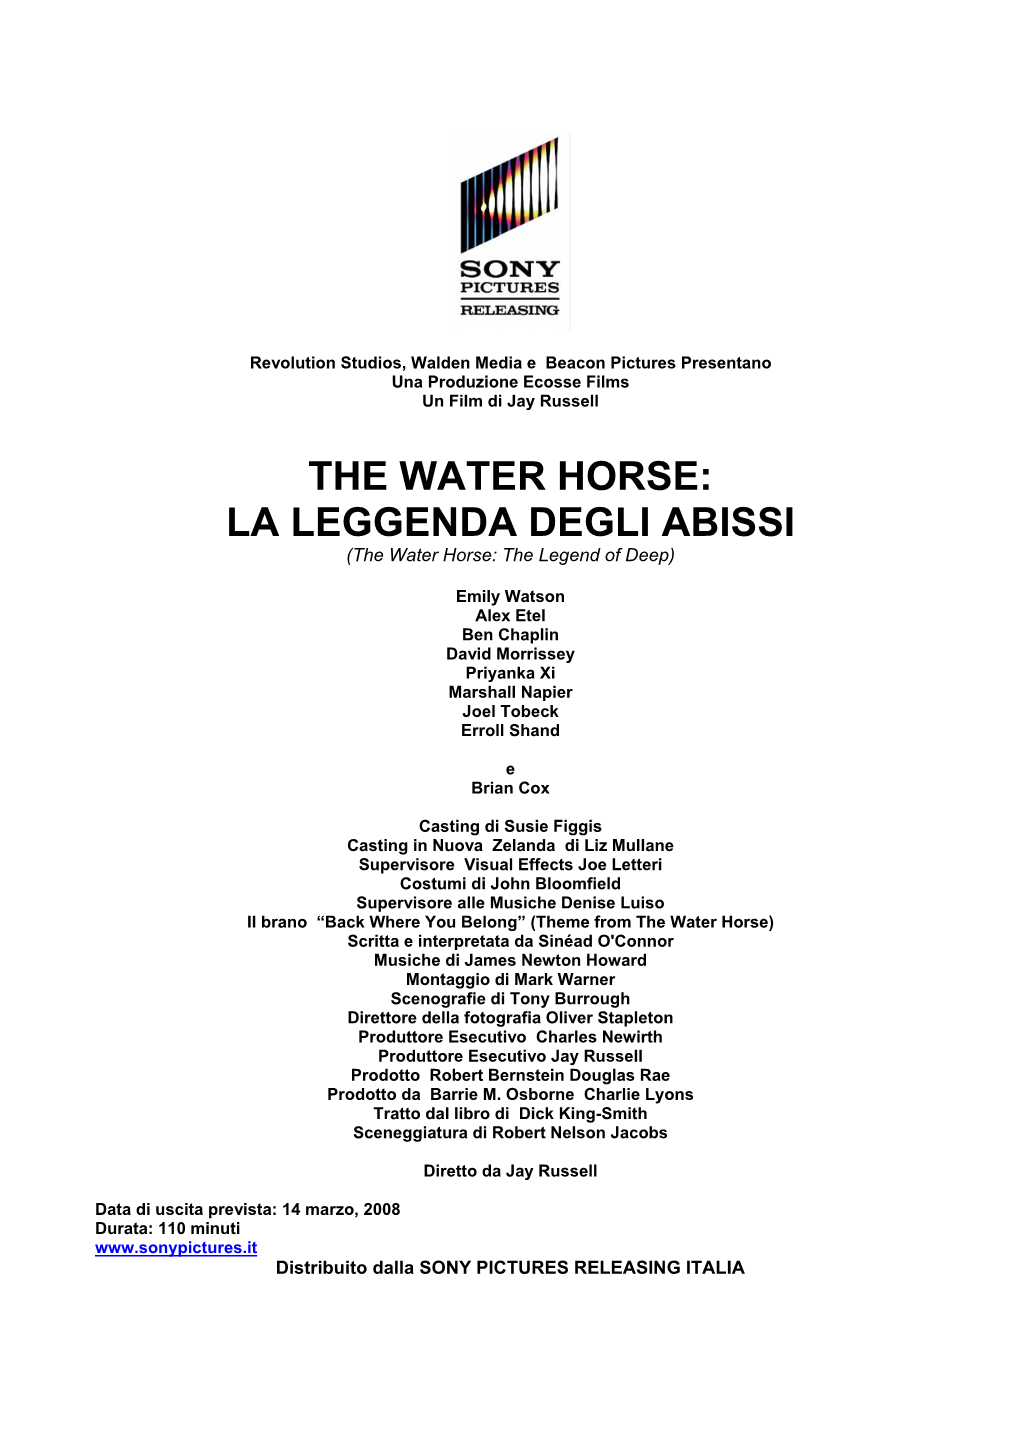 LA LEGGENDA DEGLI ABISSI (The Water Horse: the Legend of Deep)